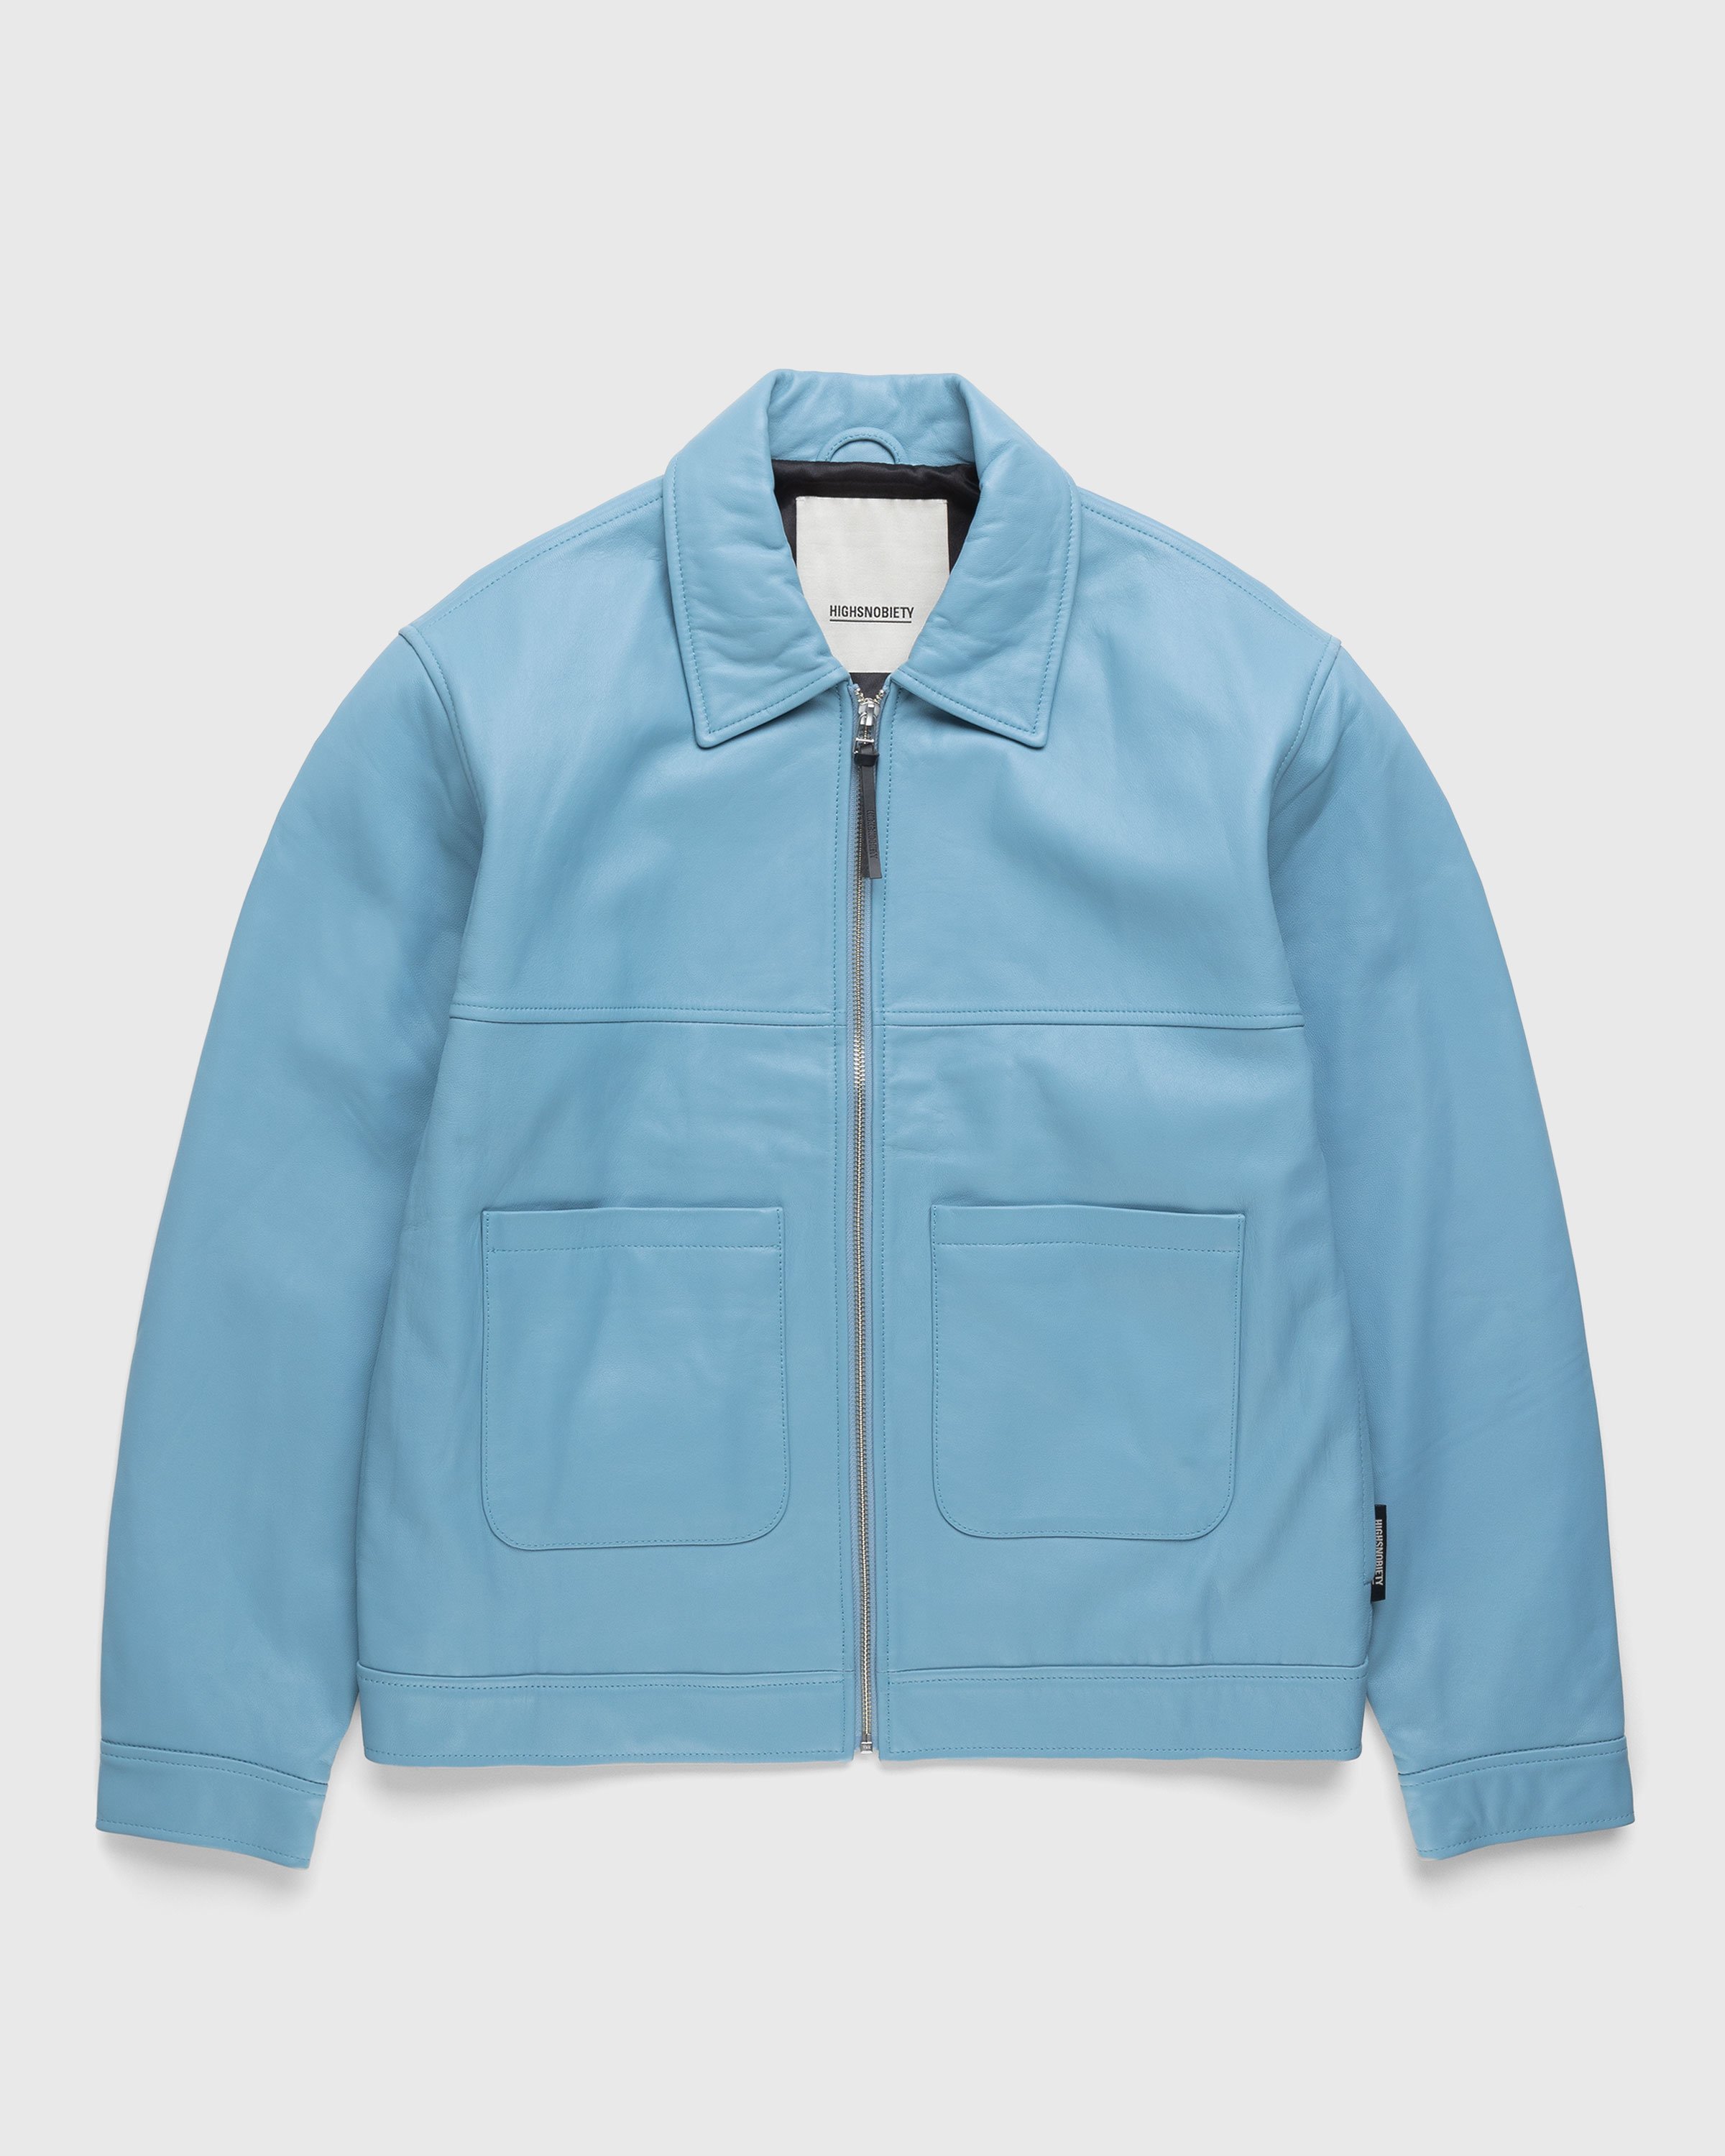 Highsnobiety - Leather Jacket Baby Blue - Clothing - Blue - Image 1